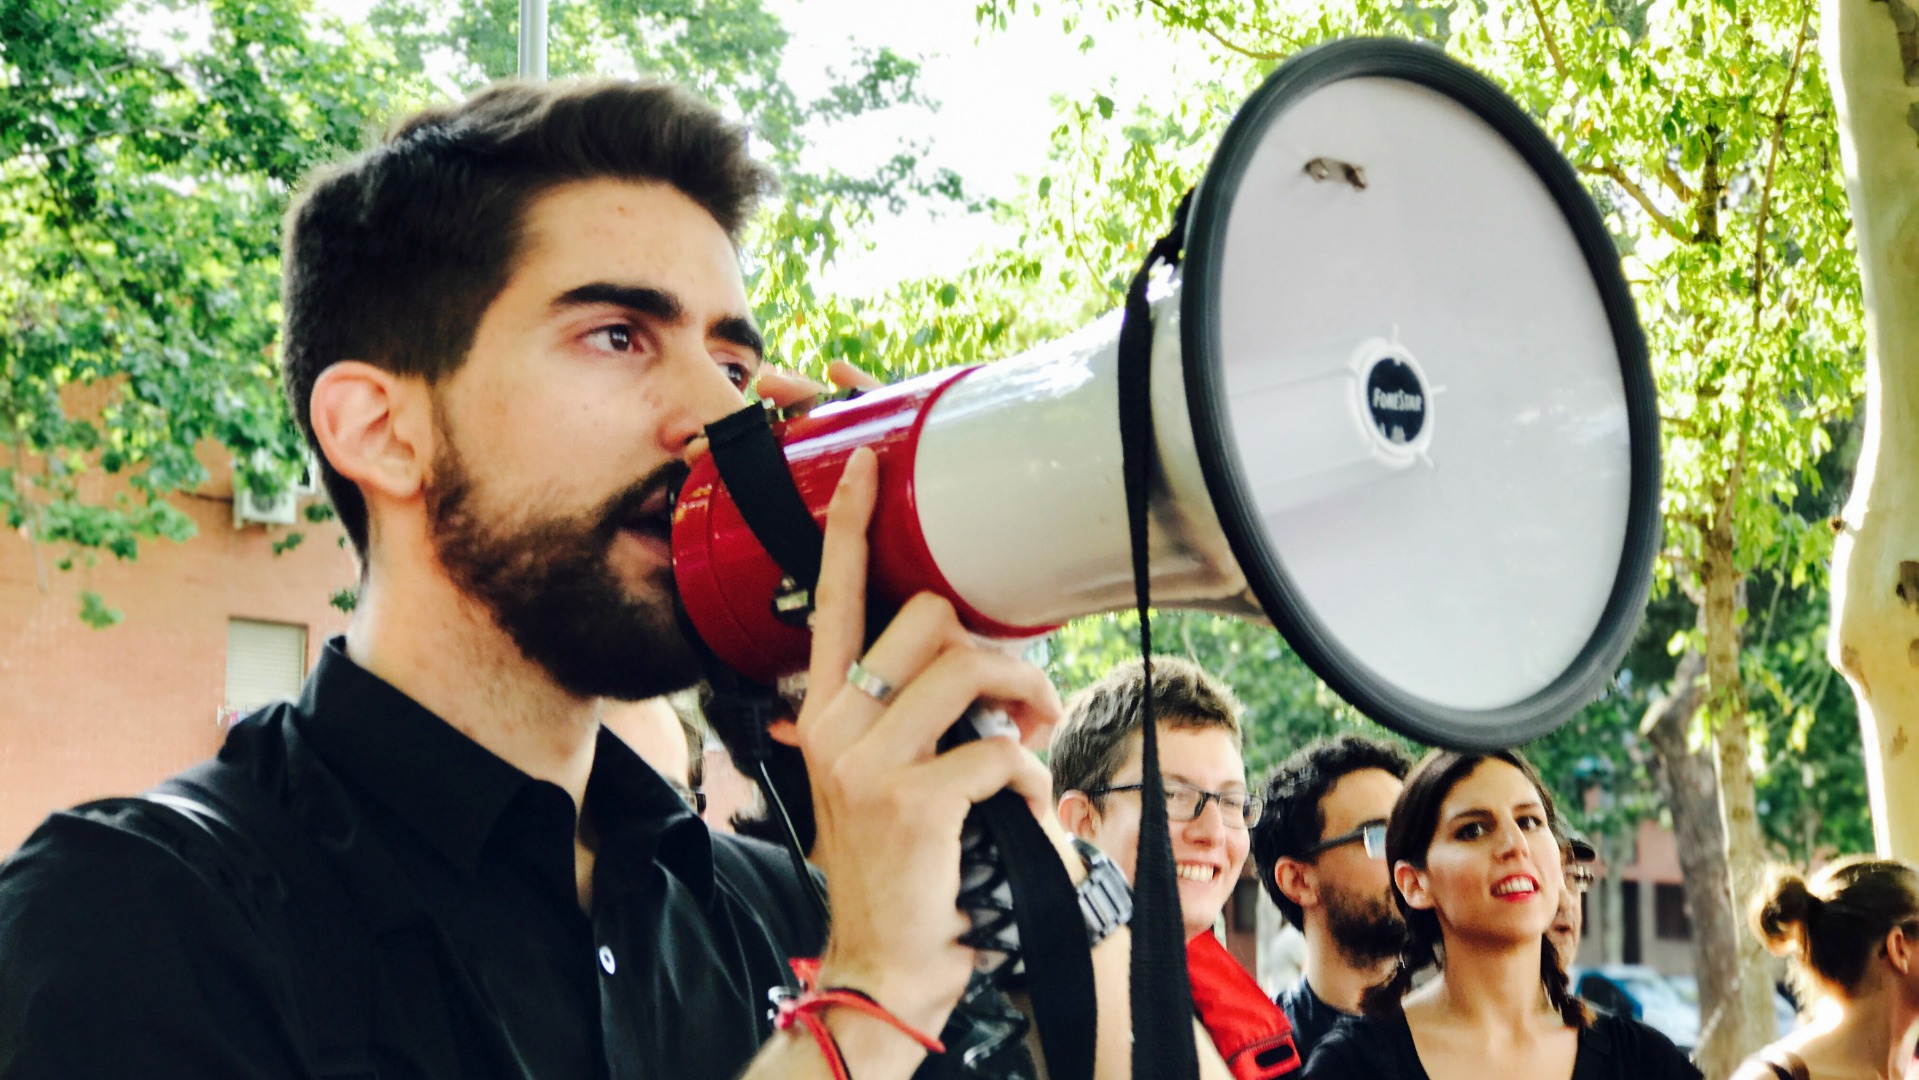 La última jornada del Mad Cool abre con una protesta por la muerte de Pedro Aunión